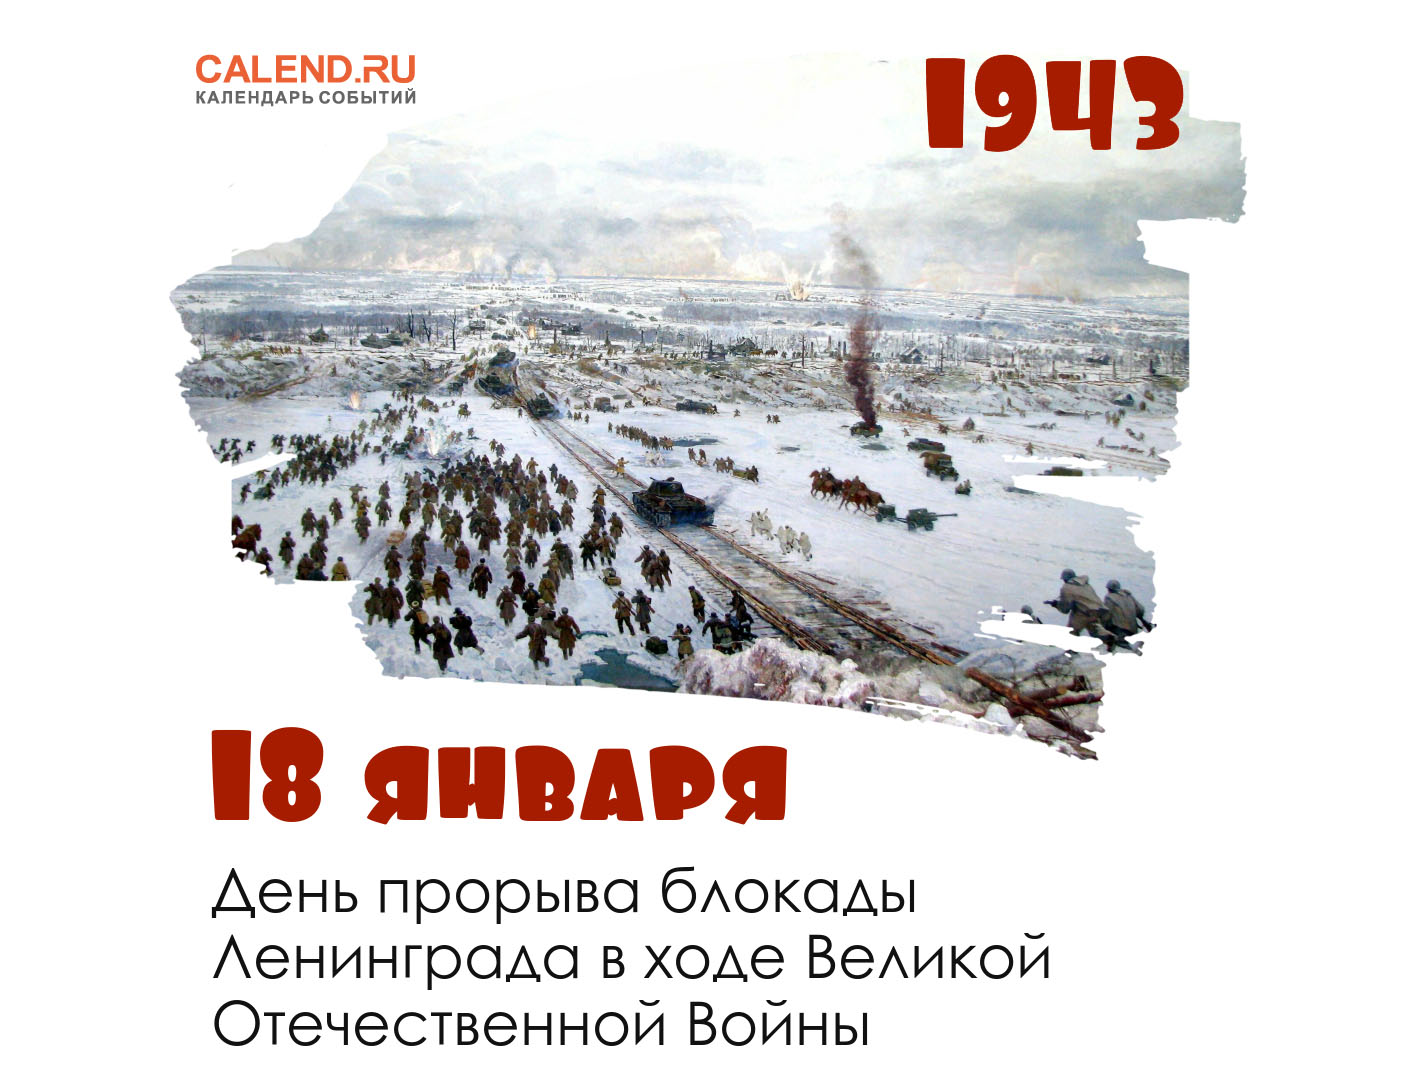 27 января афиша. 18 Января прорыв блокады Ленинграда. Прорыв блокады Ленинграда 80. Прорыв блокады 1943. Прорыв блокадного кольца 18 января 1943 года.